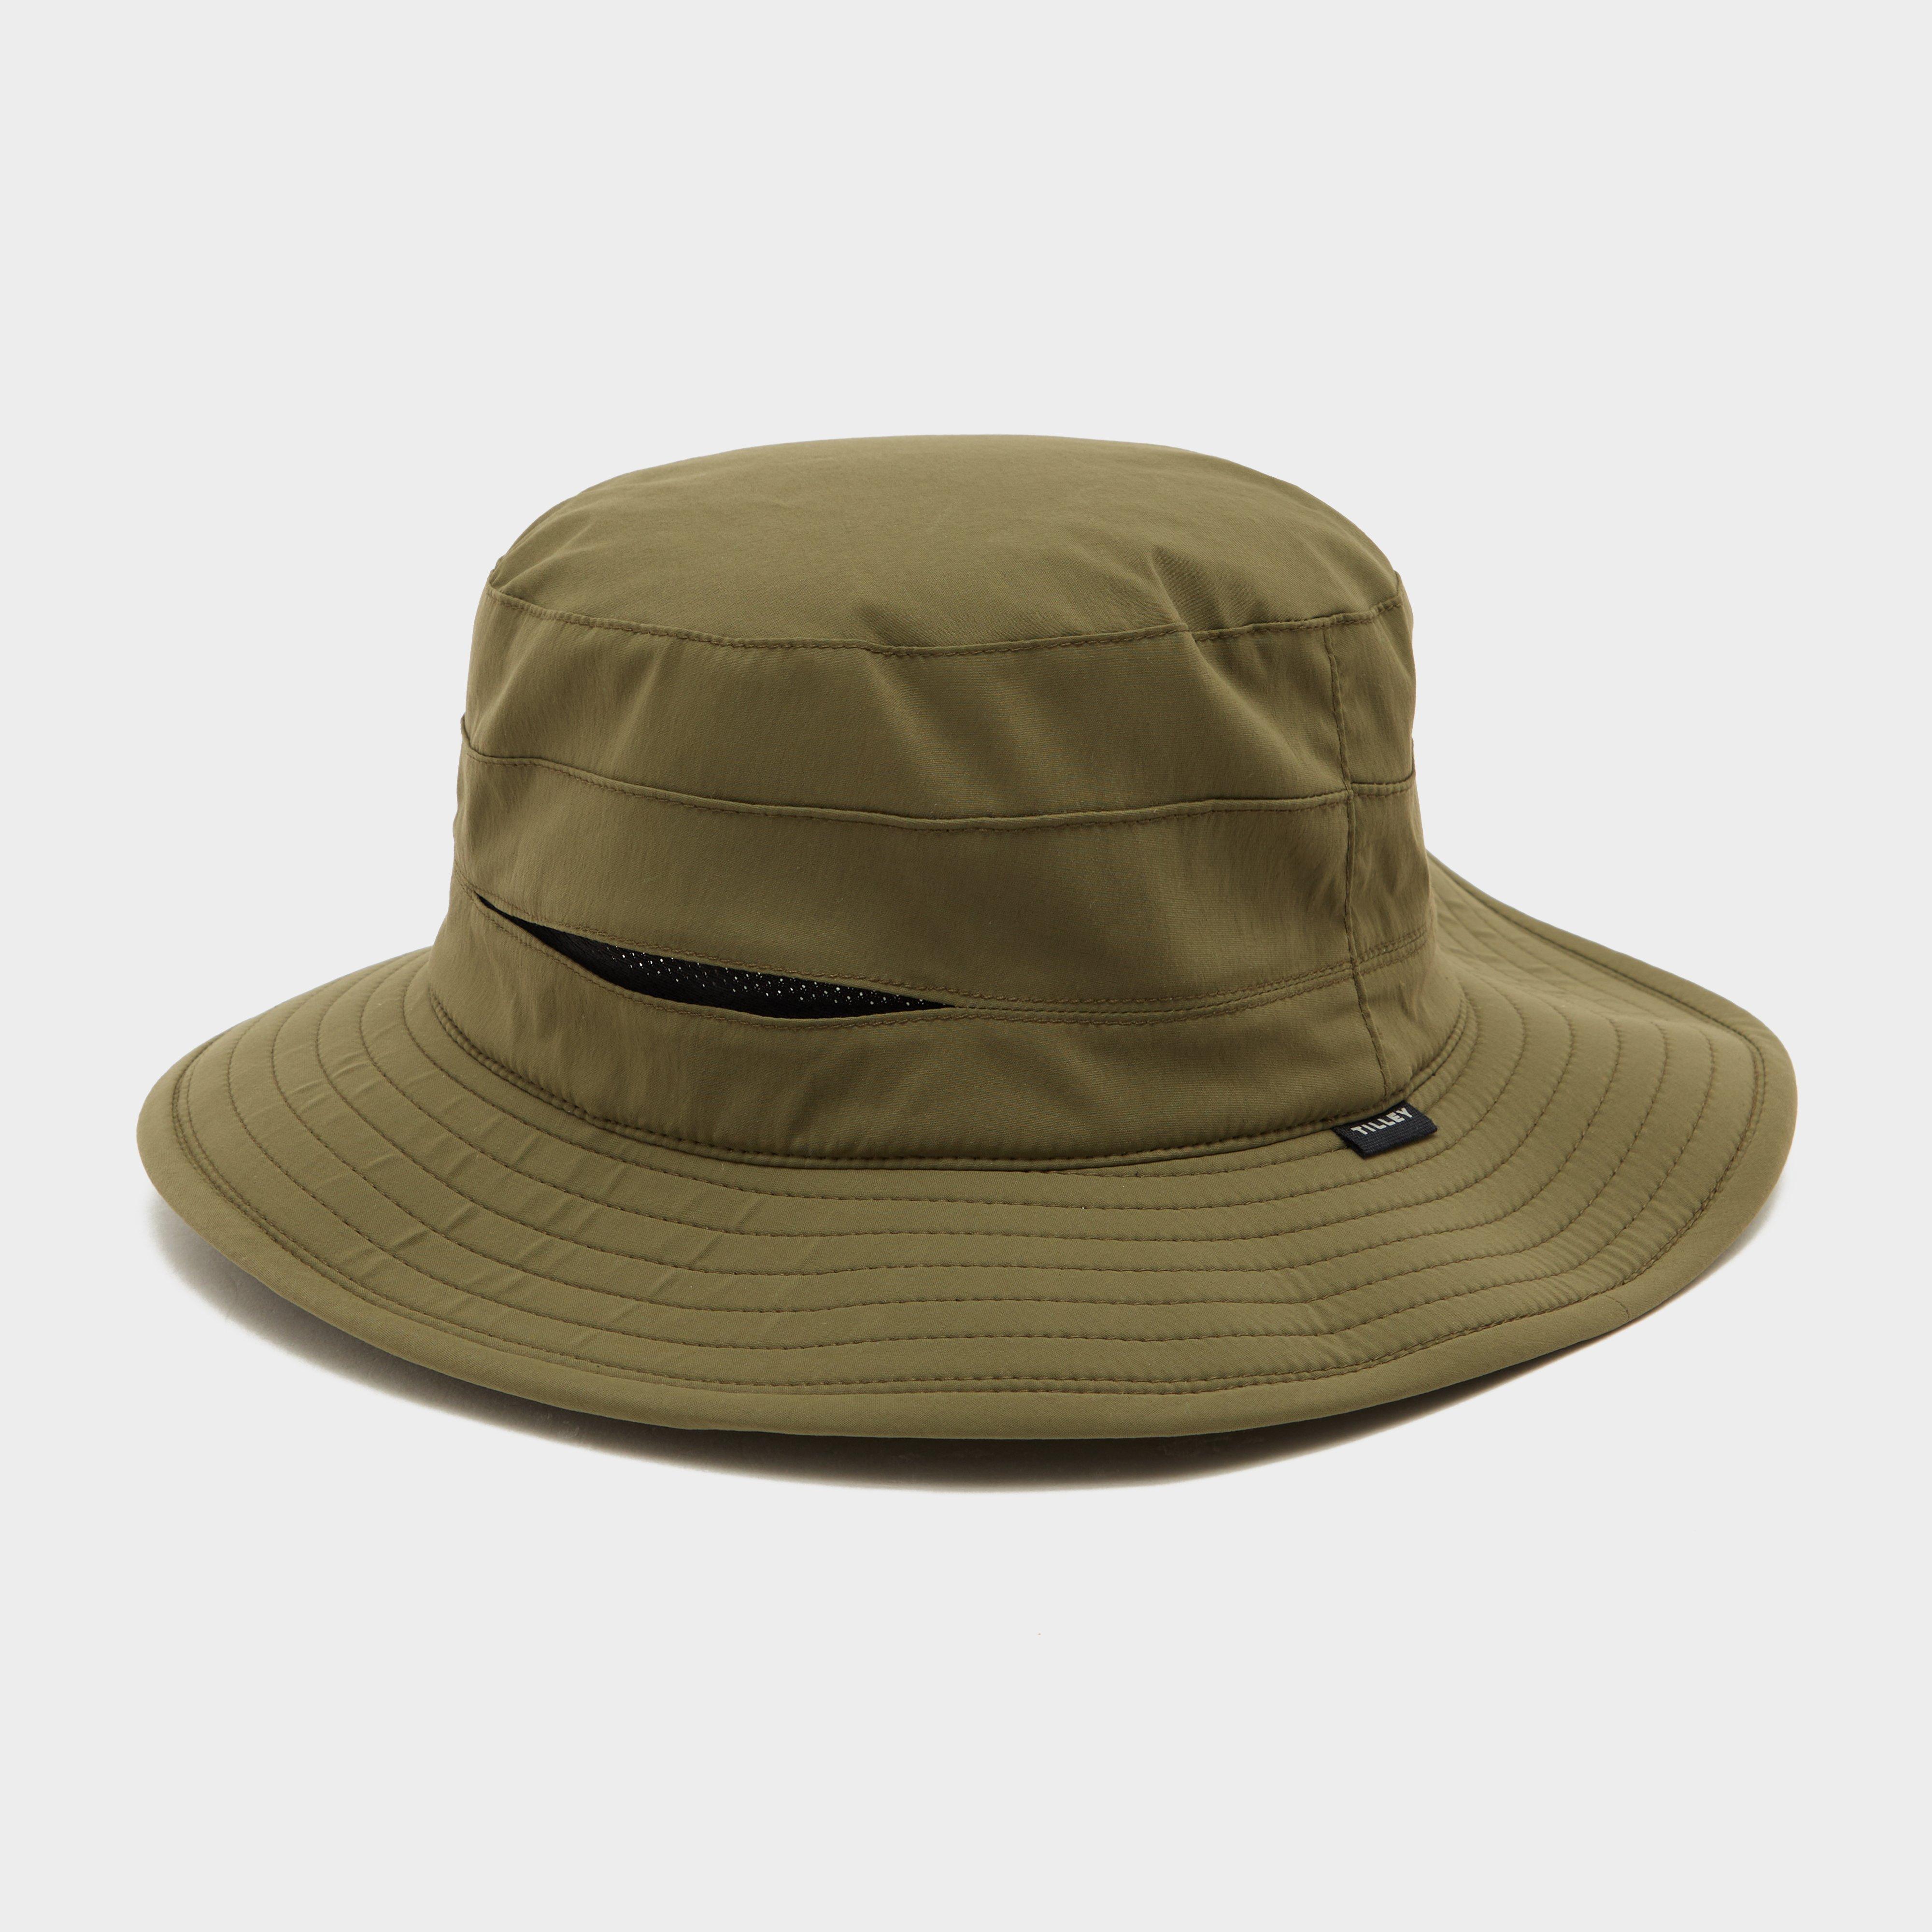  Tilley Ultralight Sun Hat, Green